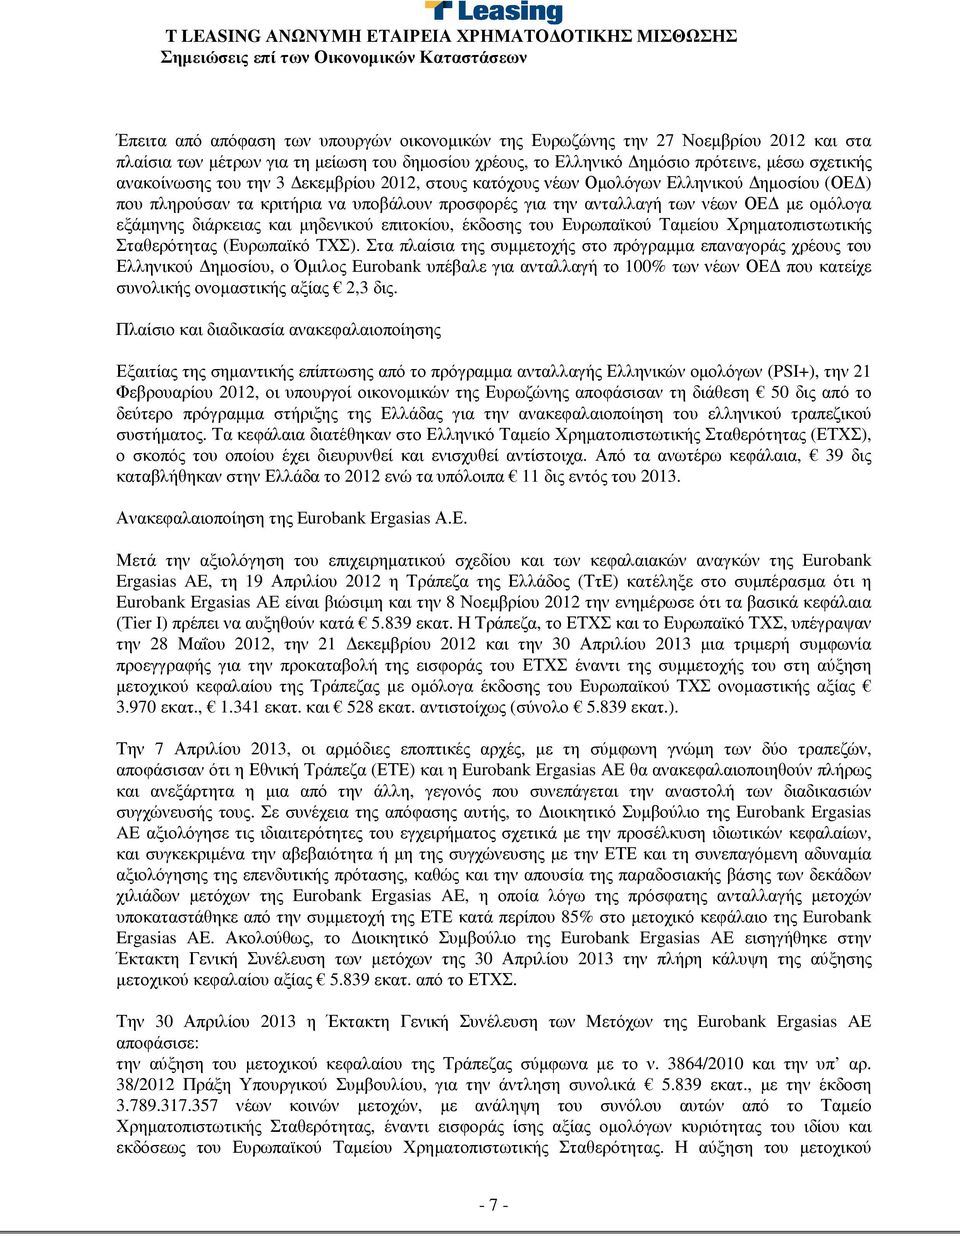 µηδενικού επιτοκίου, έκδοσης του Ευρωπαϊκού Ταµείου Χρηµατοπιστωτικής Σταθερότητας (Ευρωπαϊκό ΤΧΣ).